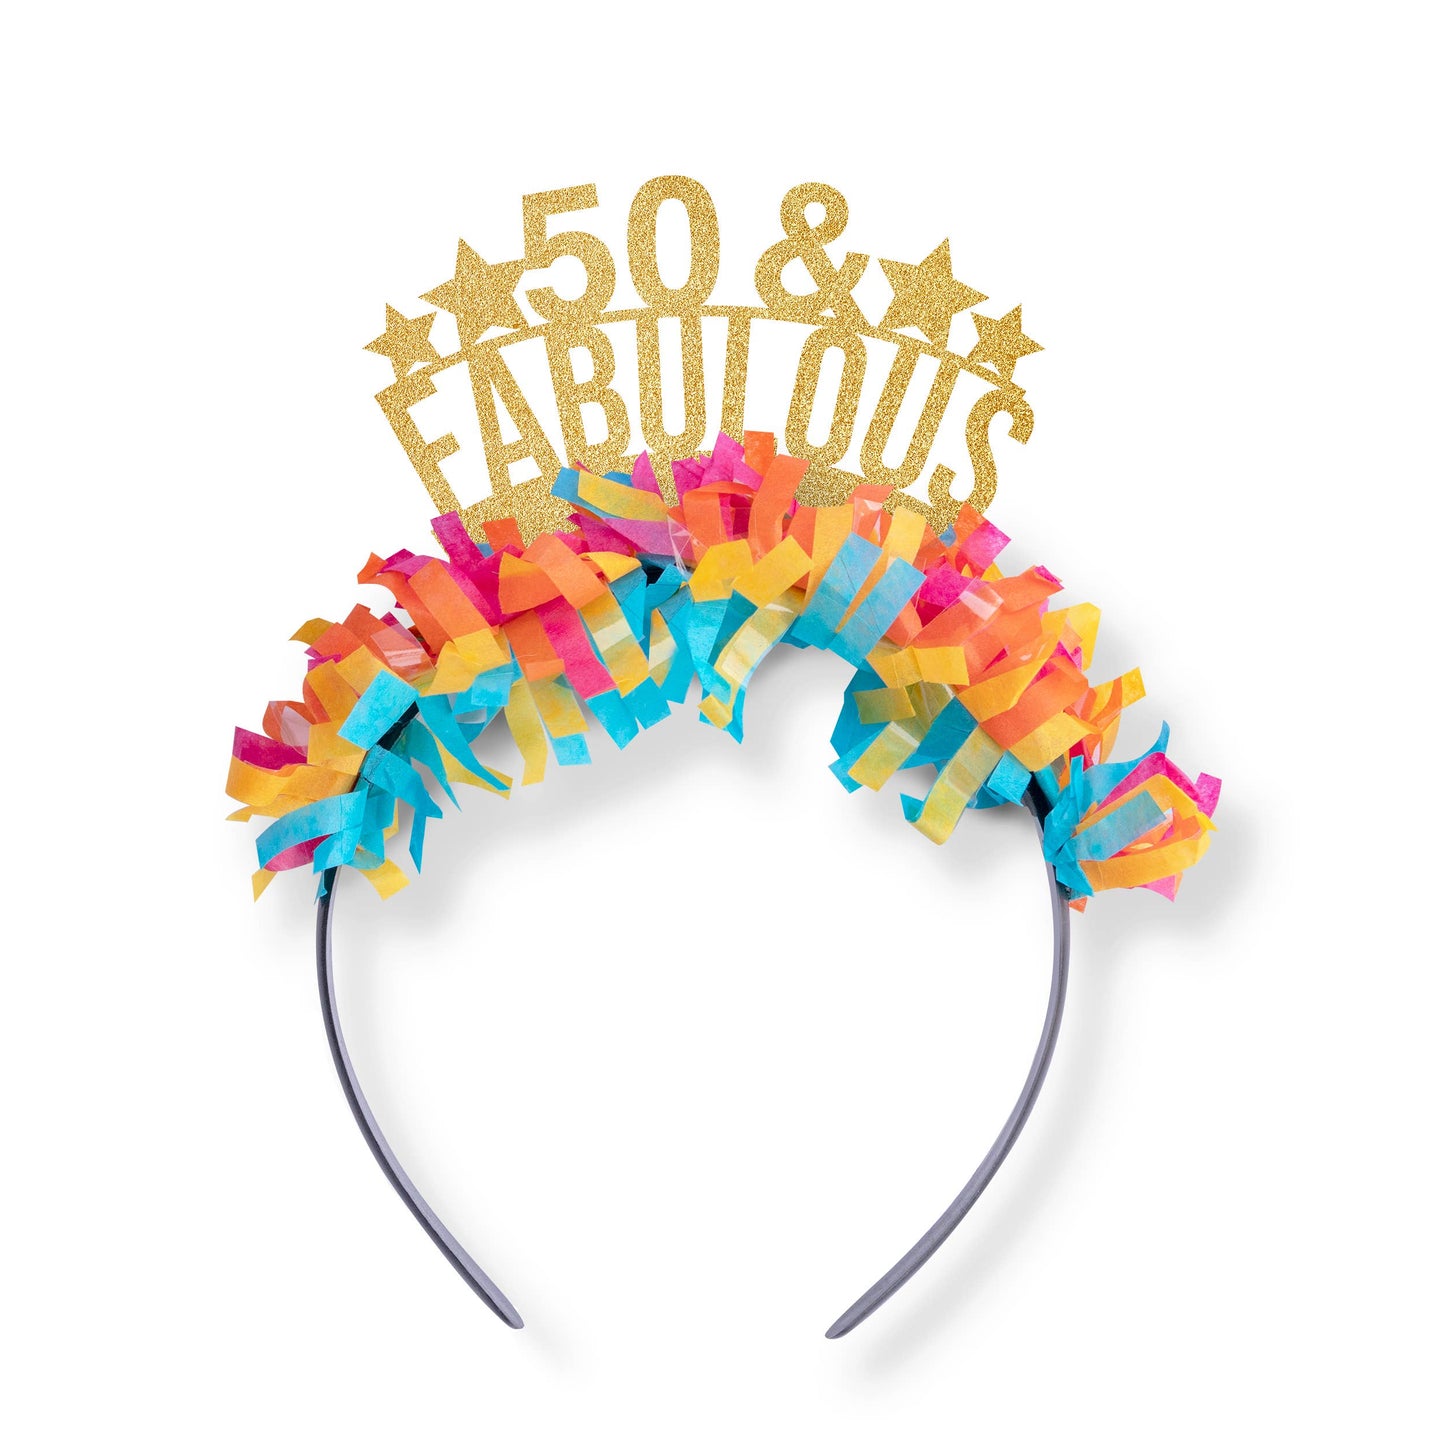 Party Headband: 50 & Fabulous